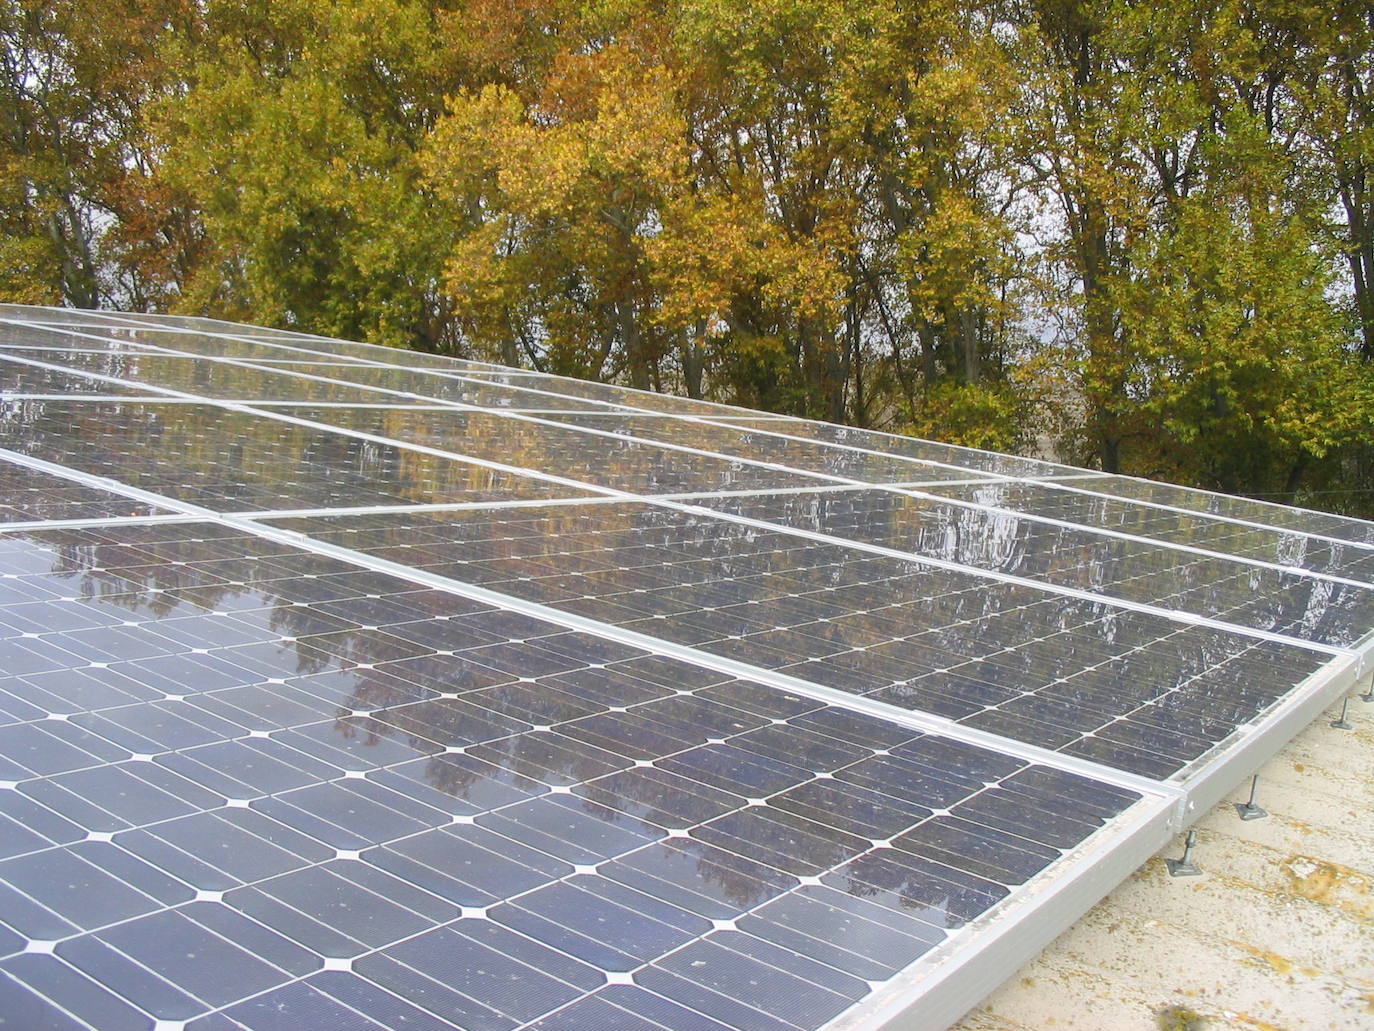 El Gobierno no concede la autorización ambiental a una planta fotovoltaica en Anaya, Marazoleja y Marazuela